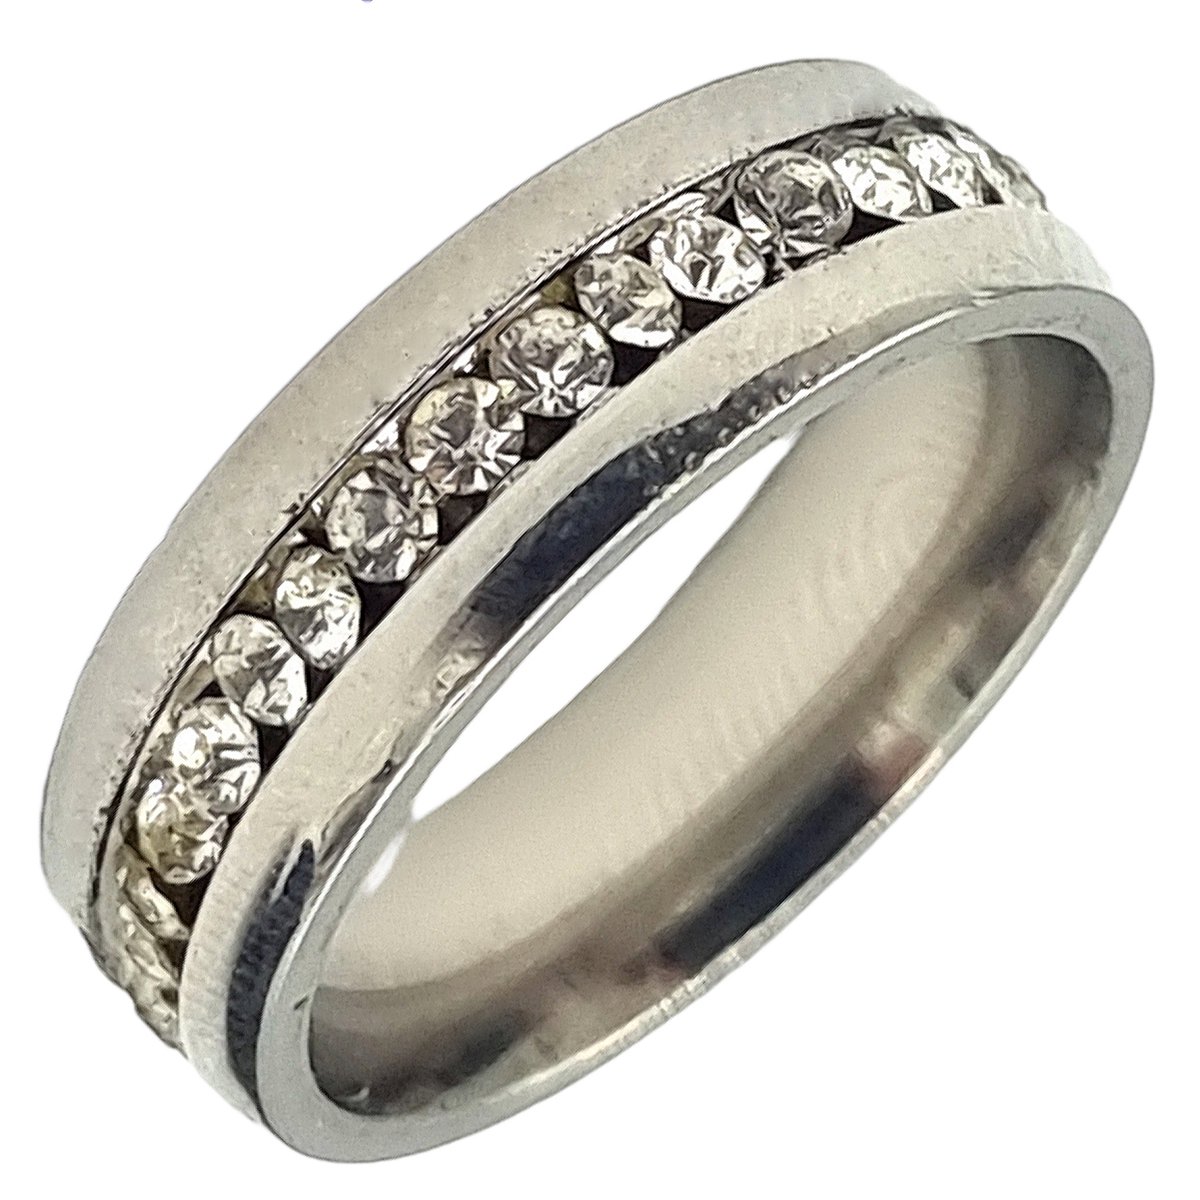 Tesoro Mio Michel – Dames Ring Voor Vrouw – Staal In Kleur Zilver – Met Zirkonia Stenen – 16 mm / Maat 50